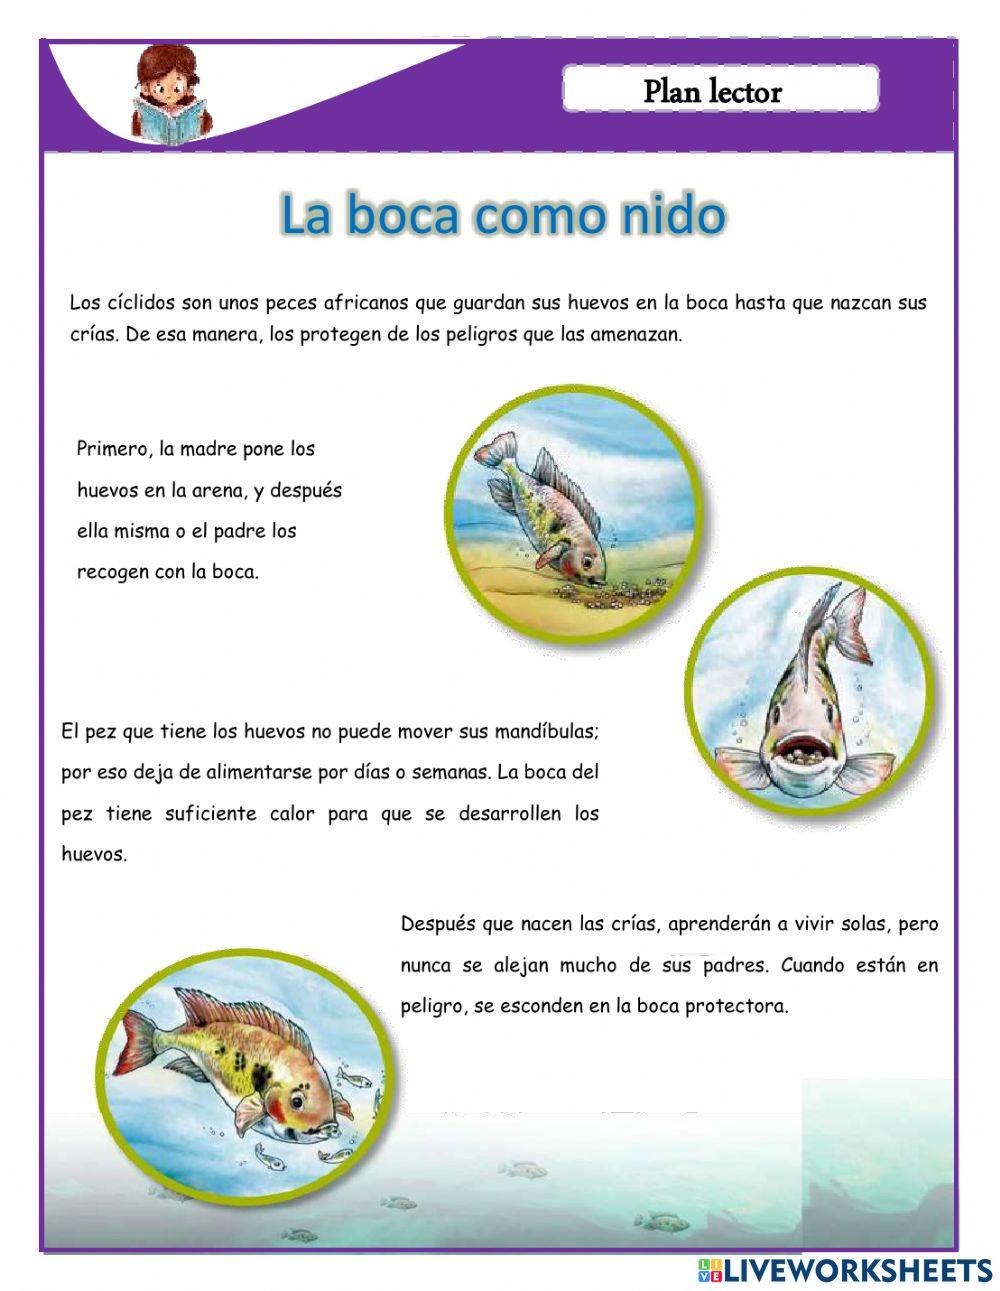 PLAN LECTOR:LA BOCA COMO NIDO online exercise for